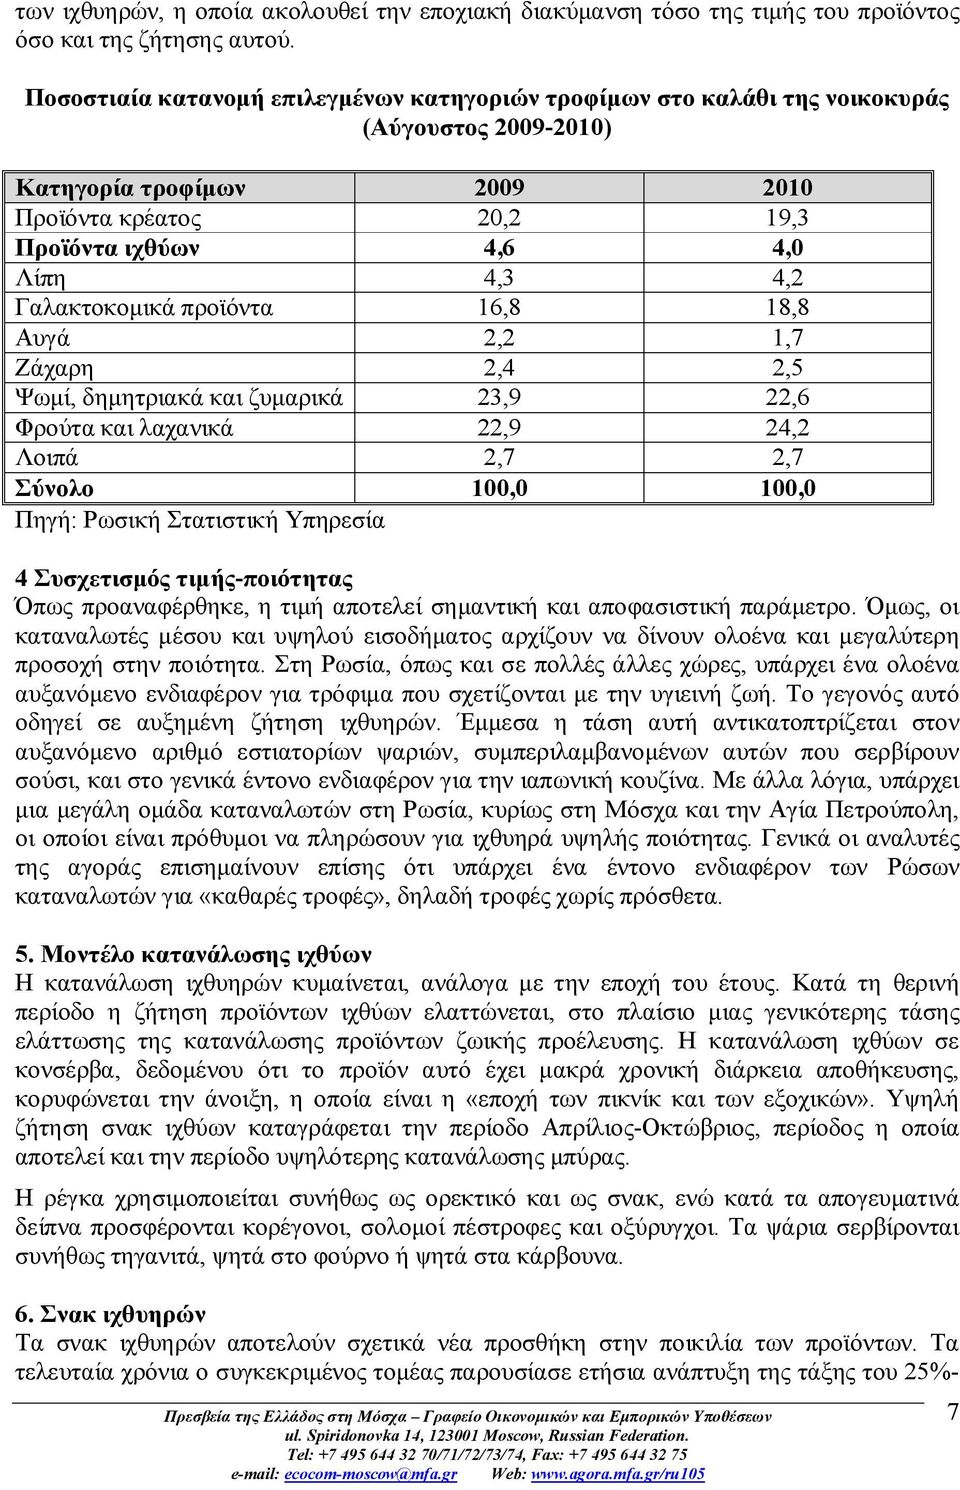 Γαλακτοκομικά προϊόντα 16,8 18,8 Αυγά 2,2 1,7 Ζάχαρη 2,4 2,5 Ψωμί, δημητριακά και ζυμαρικά 23,9 22,6 Φρούτα και λαχανικά 22,9 24,2 Λοιπά 2,7 2,7 Σύνολο 100,0 100,0 Πηγή: Ρωσική Στατιστική Υπηρεσία 4